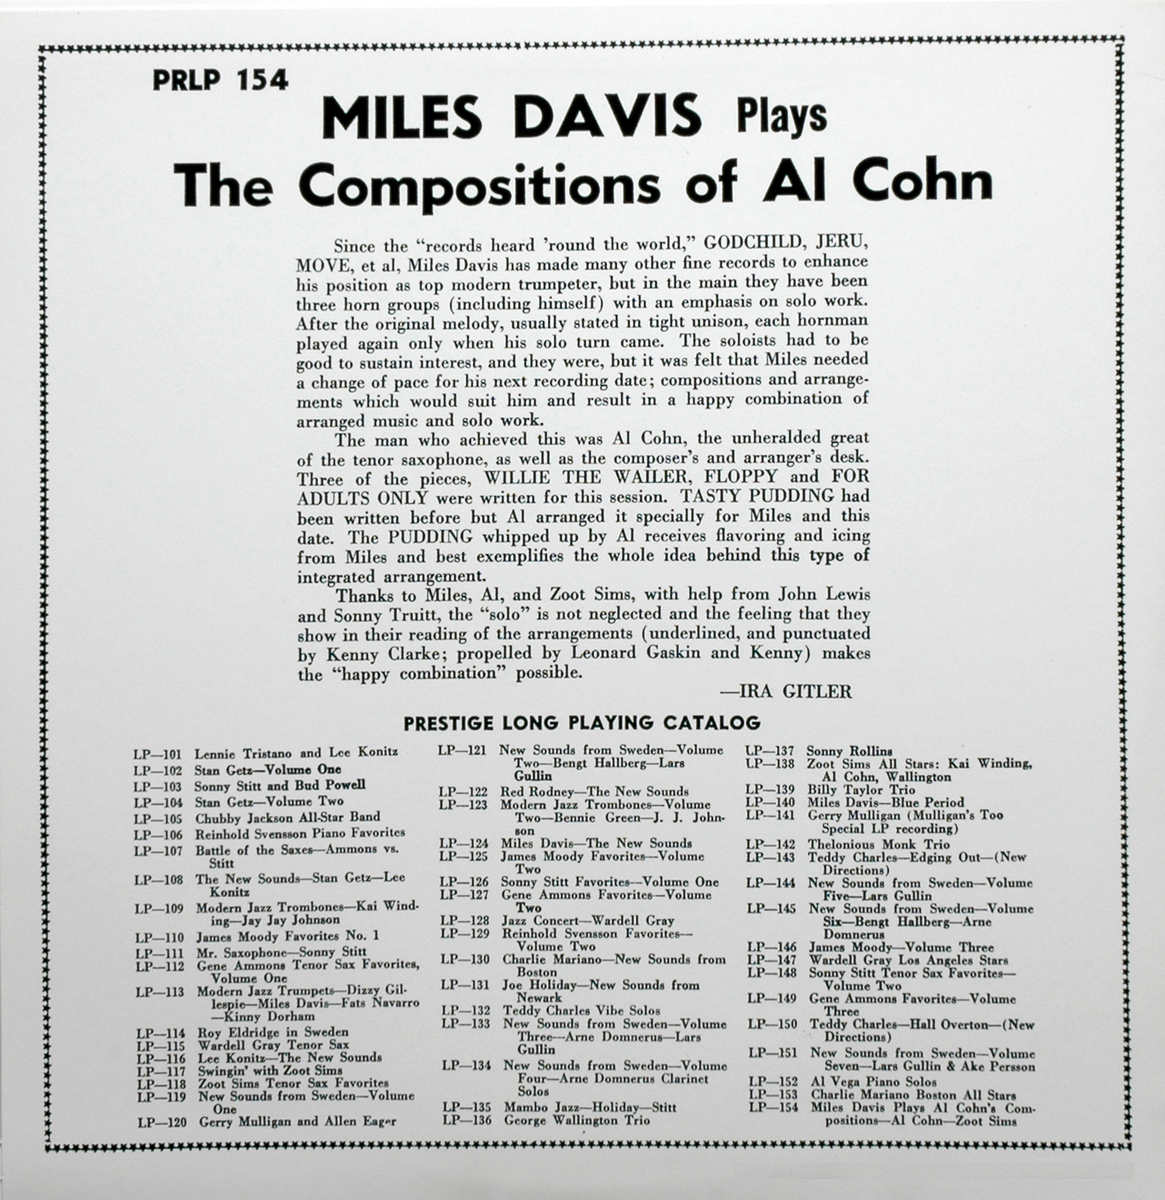 Miles Davis Plays the Compositions of Al Cohn (PRLP 154)